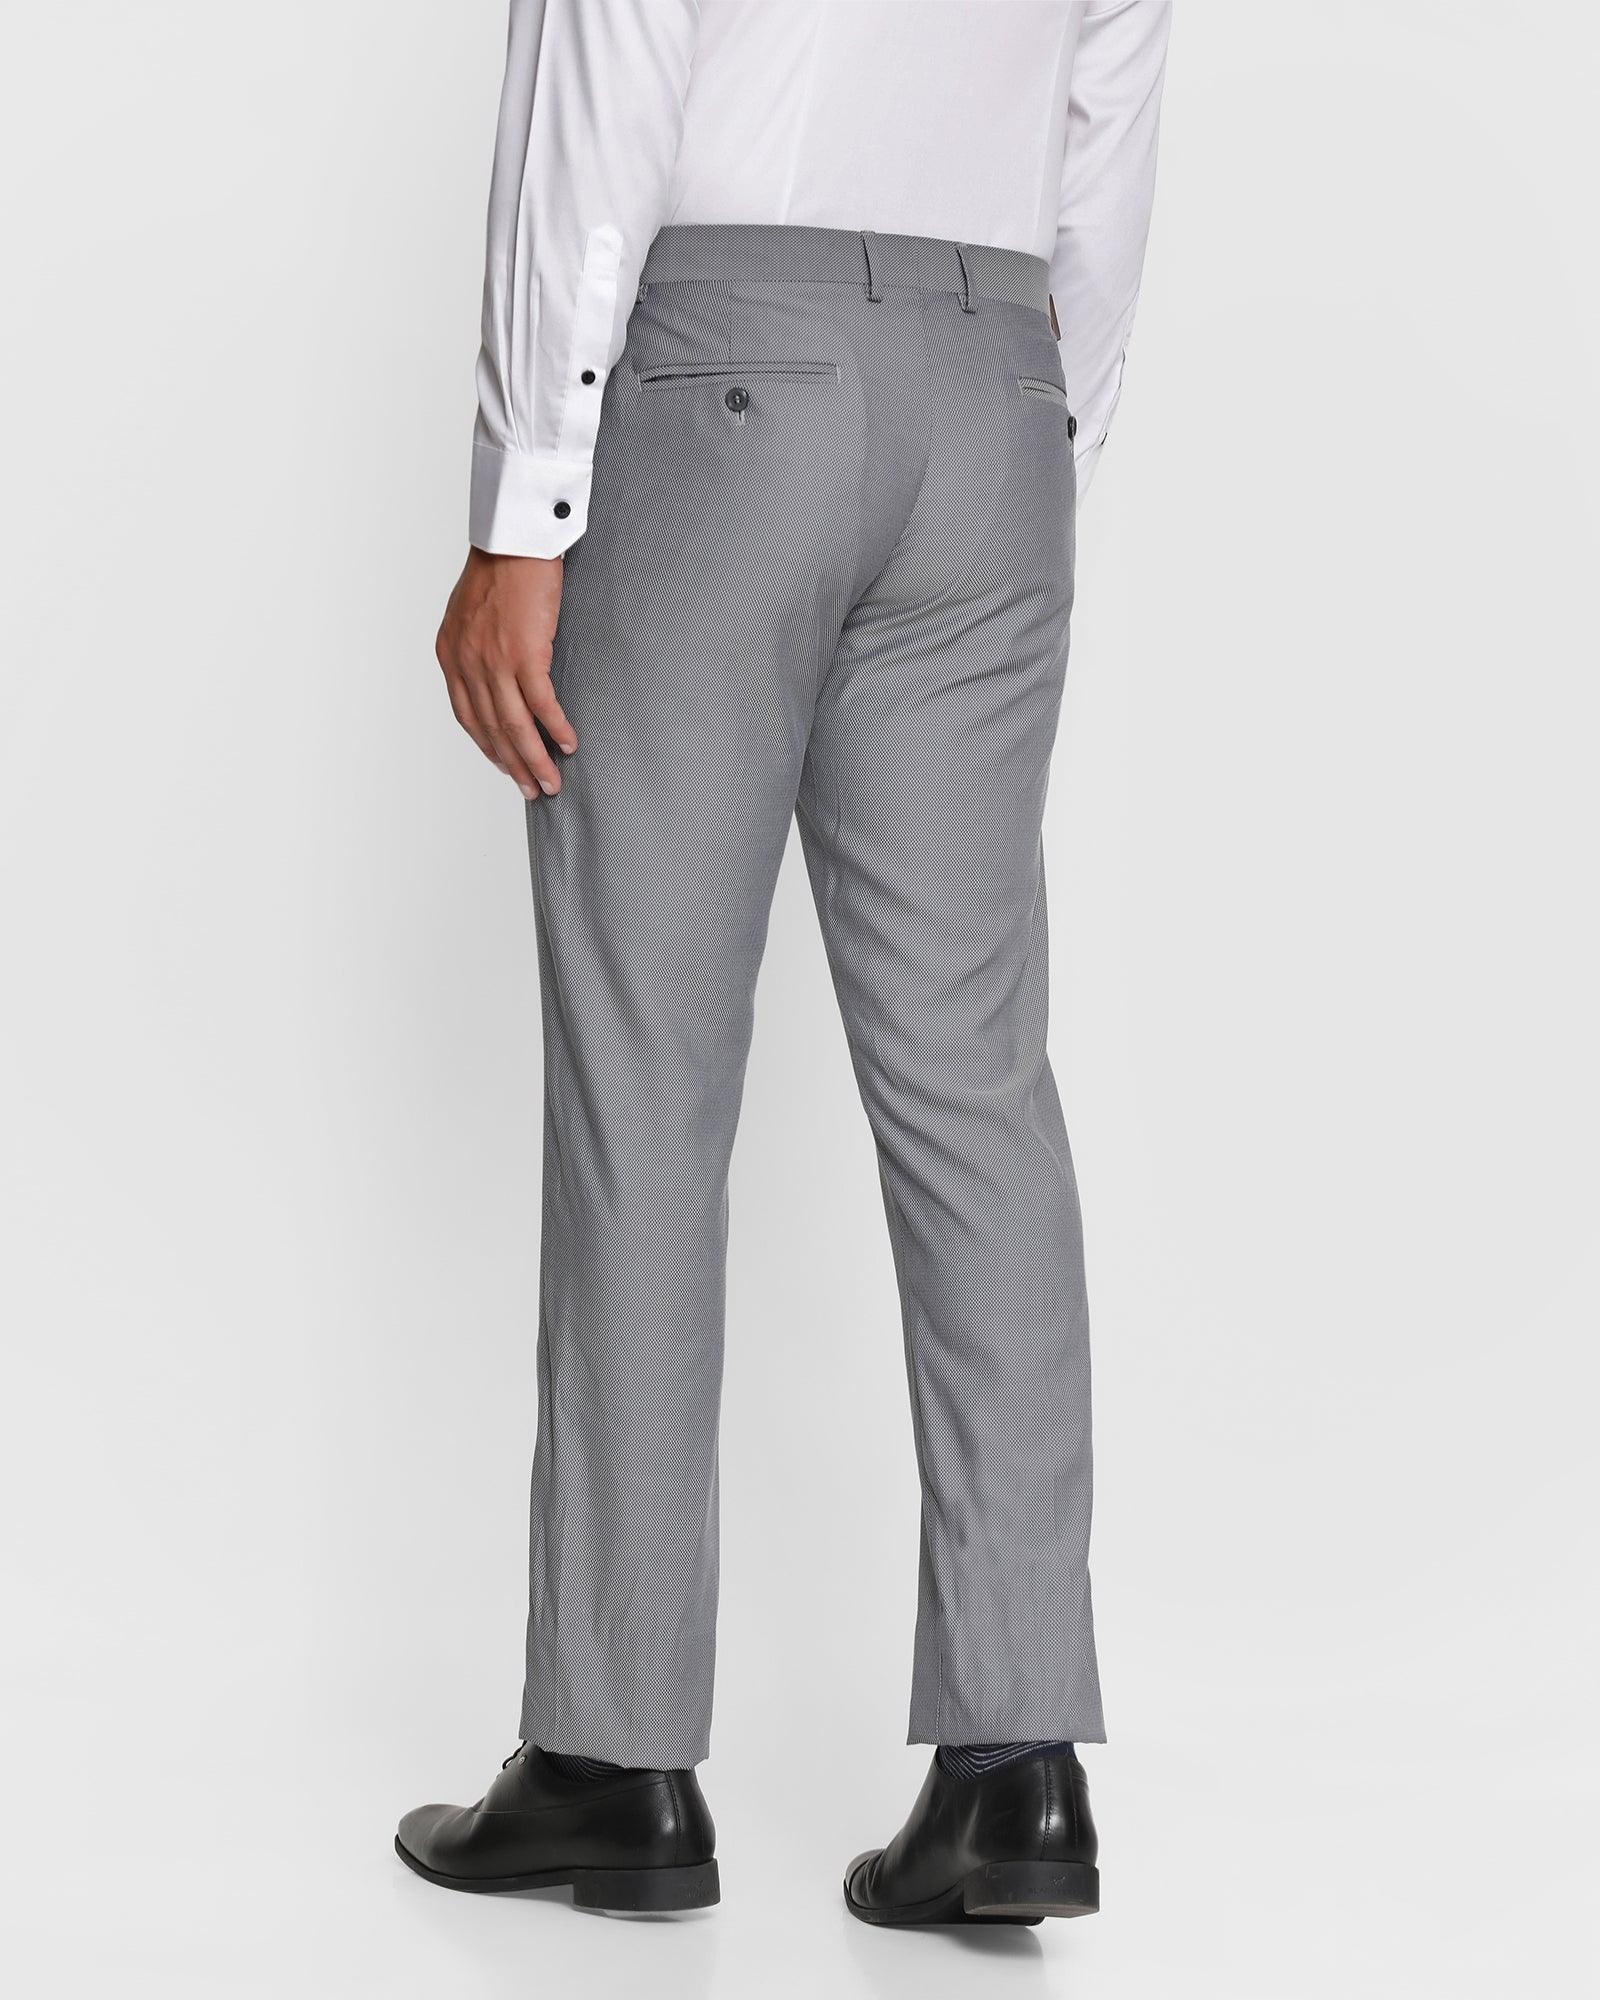 Buy Grey Shirts for Men by VAN HEUSEN Online | Ajio.com